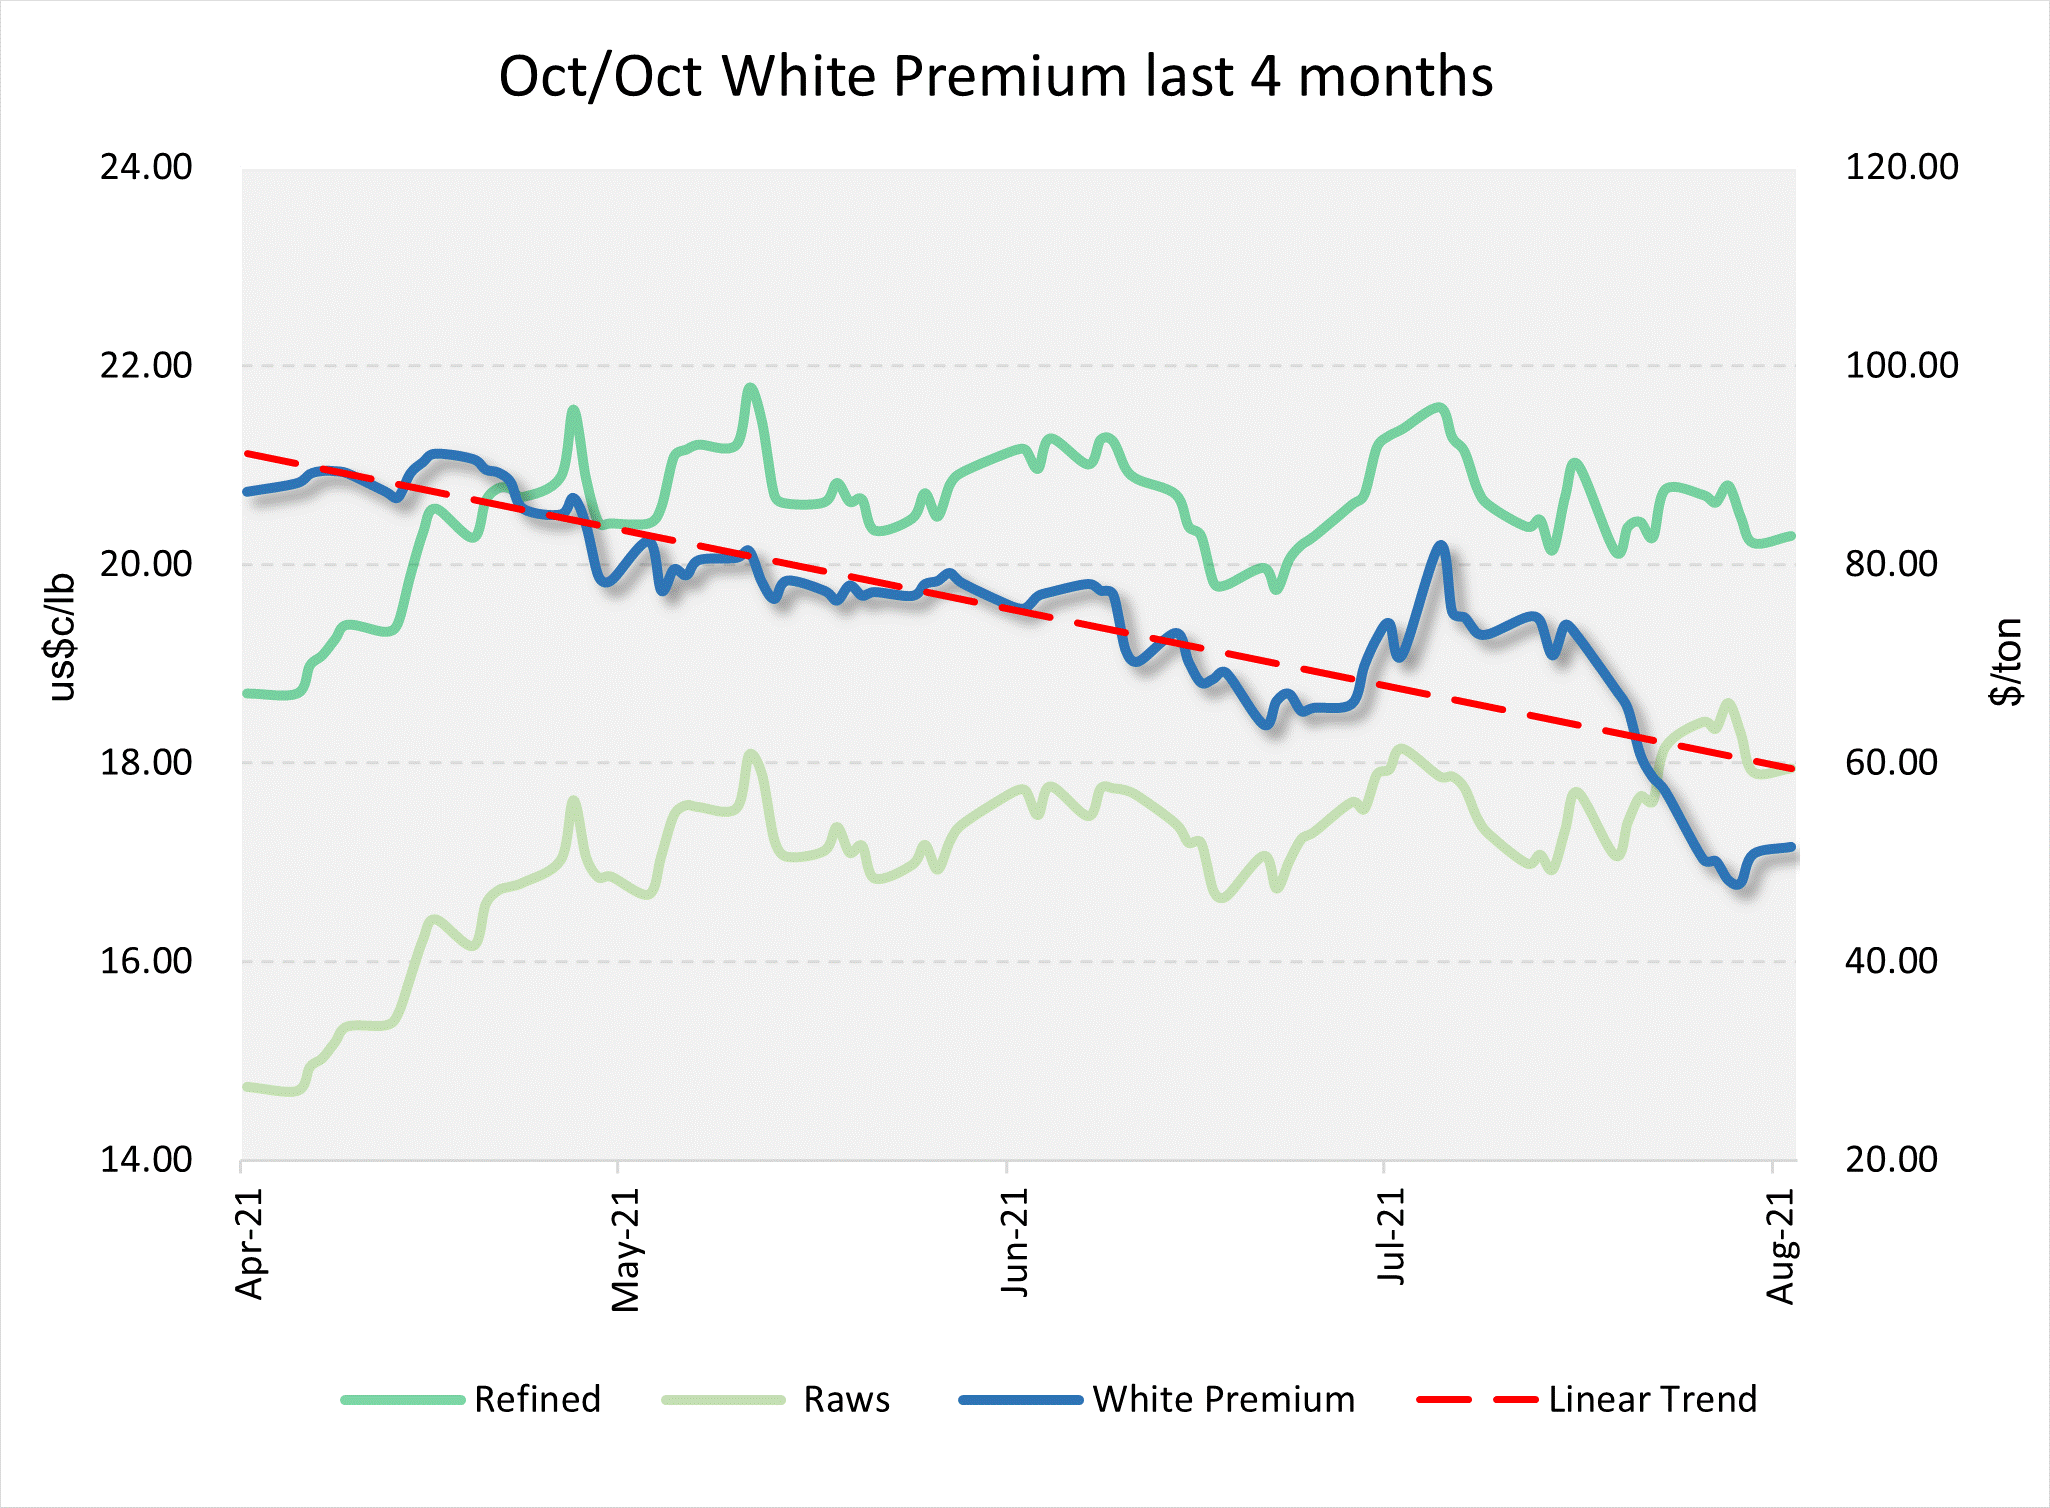 White Premium